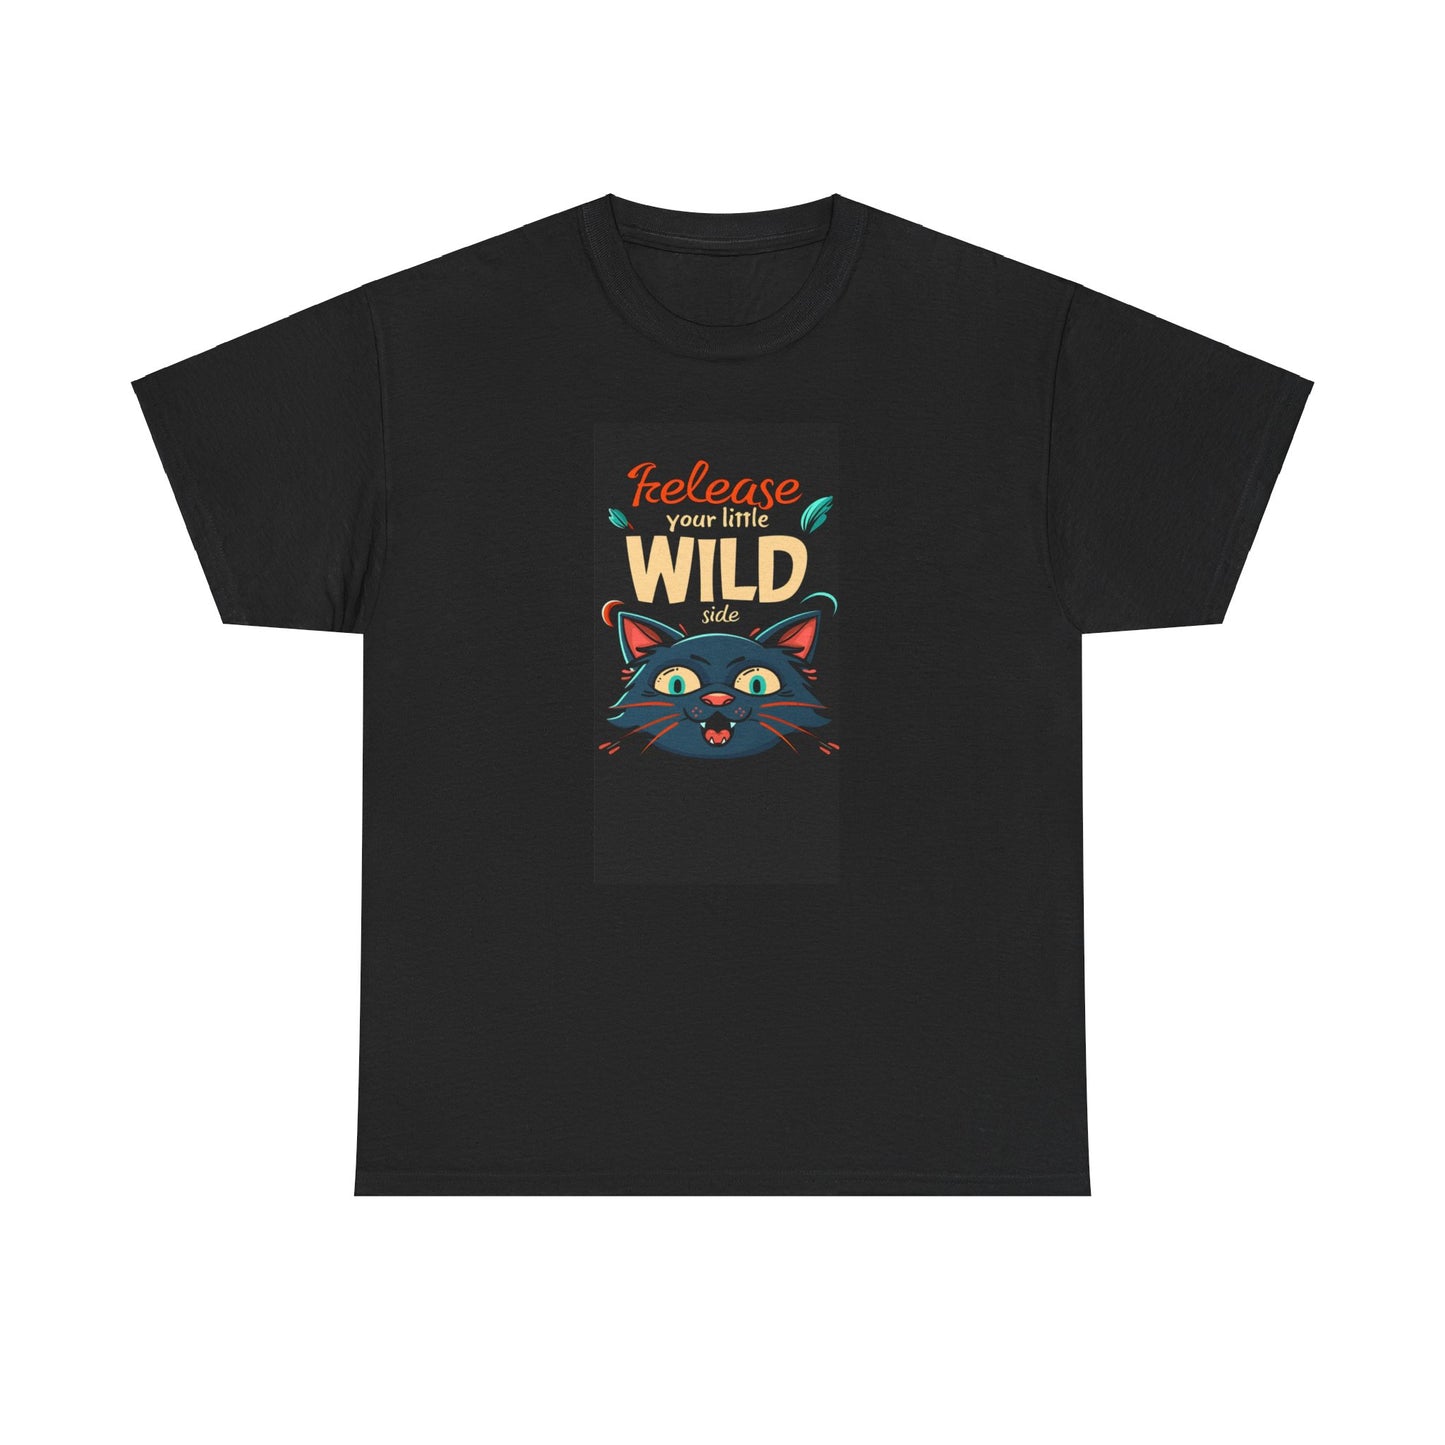 Release Little Wild Side T-shirt